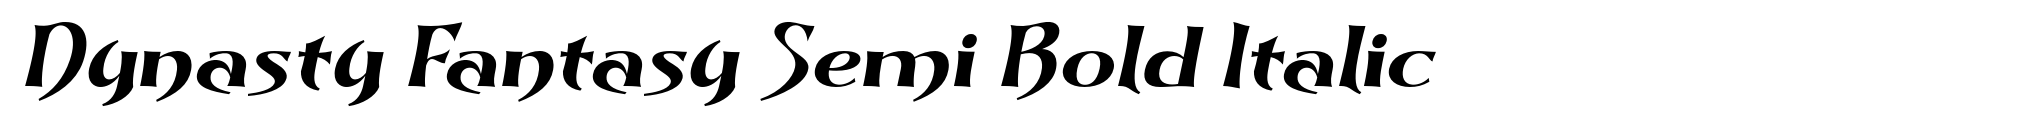 Dynasty Fantasy Semi Bold Italic image